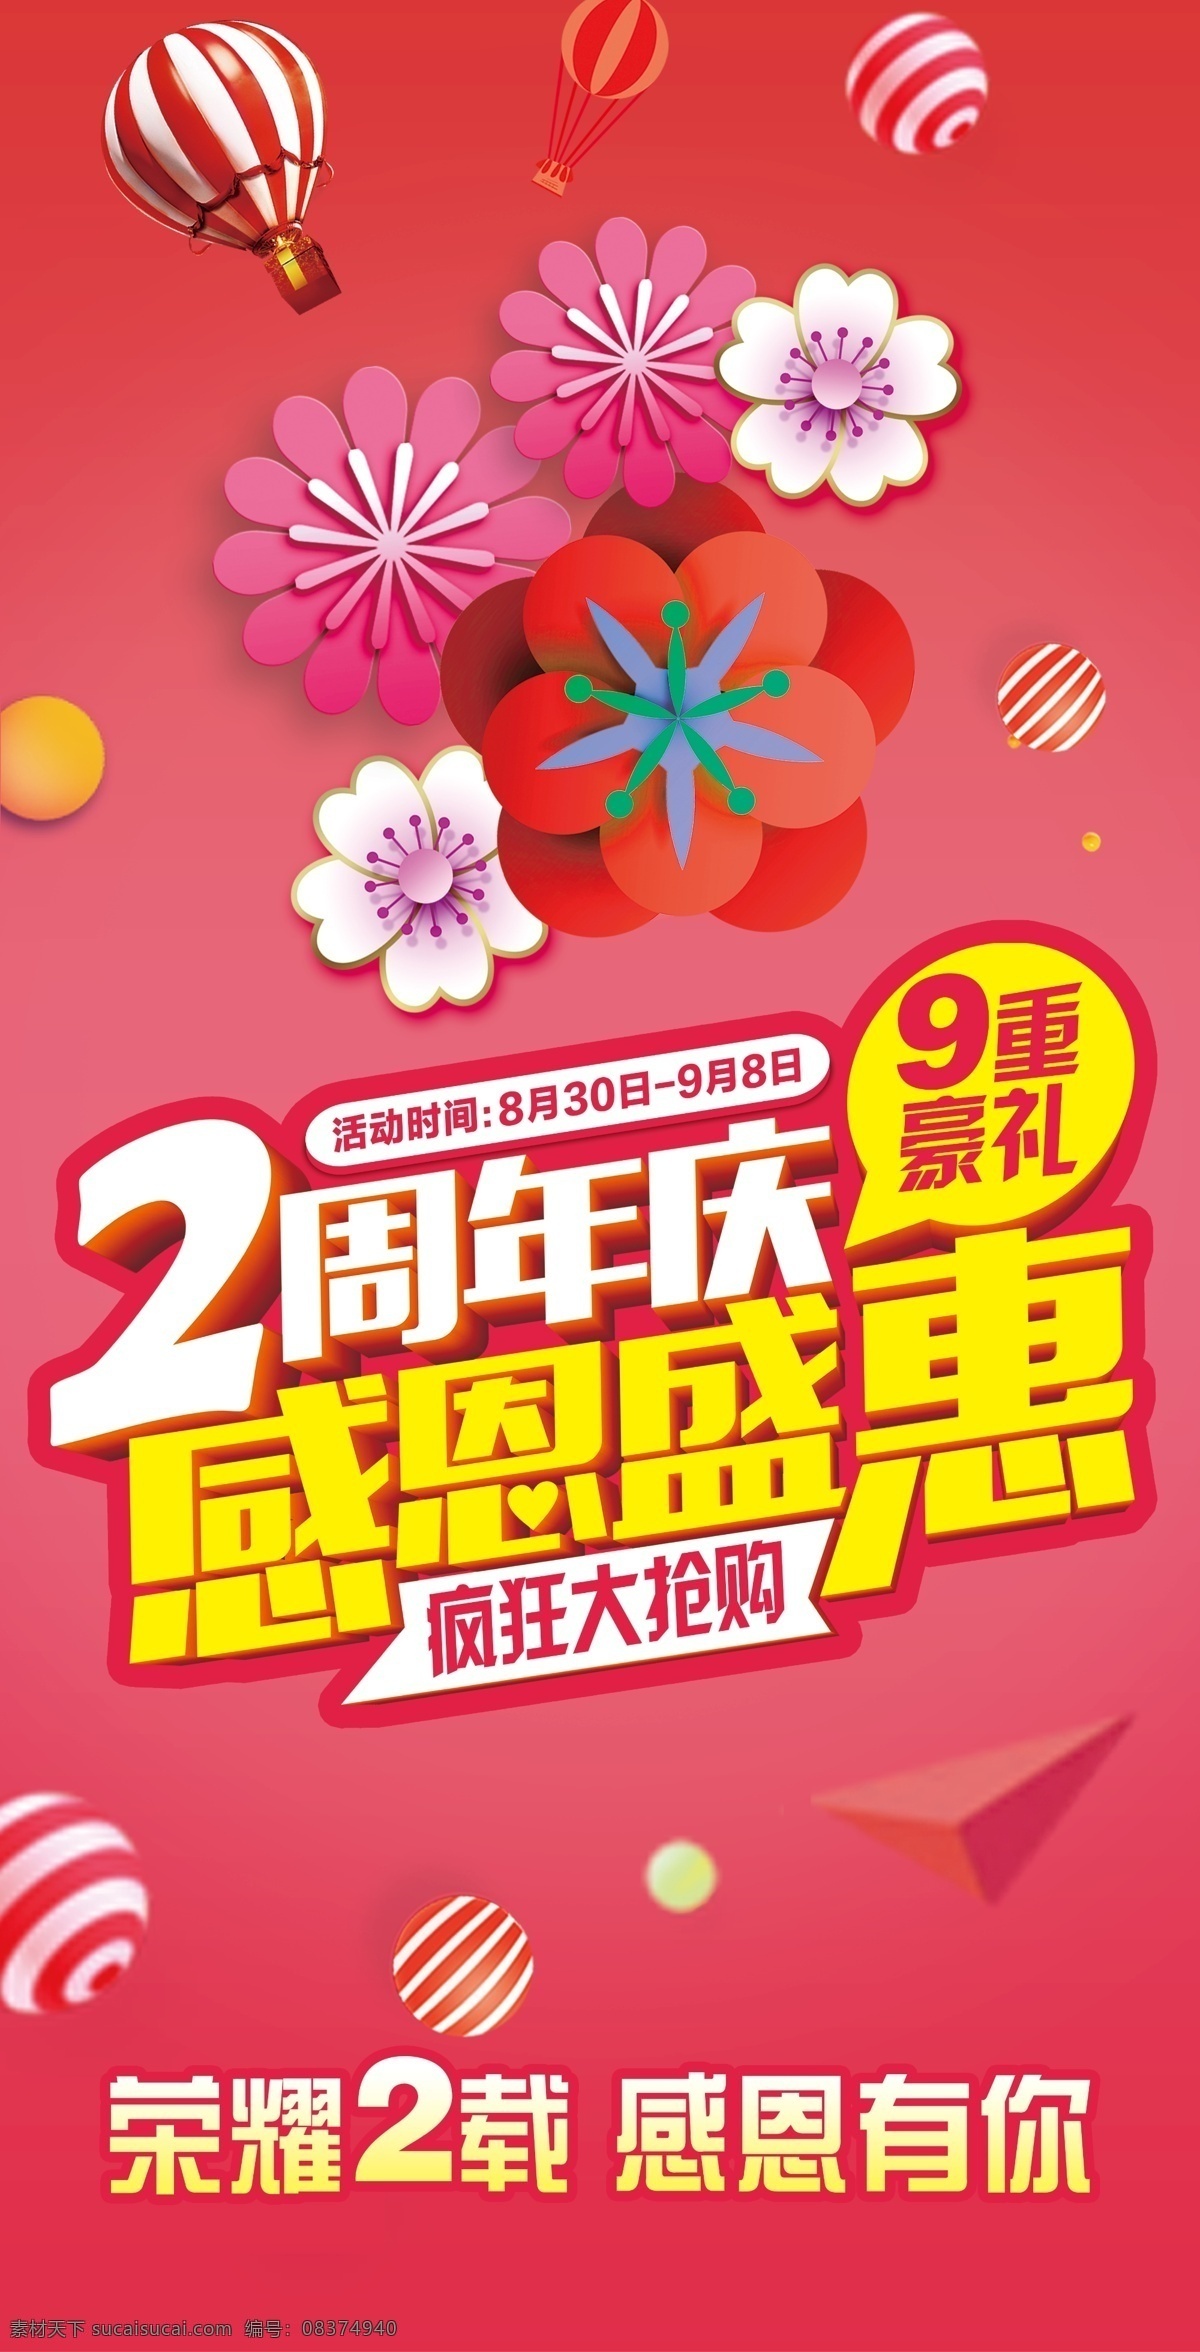 2周年庆海报 2周年庆 海报 花背景 粉色背景 周年庆海报 作品